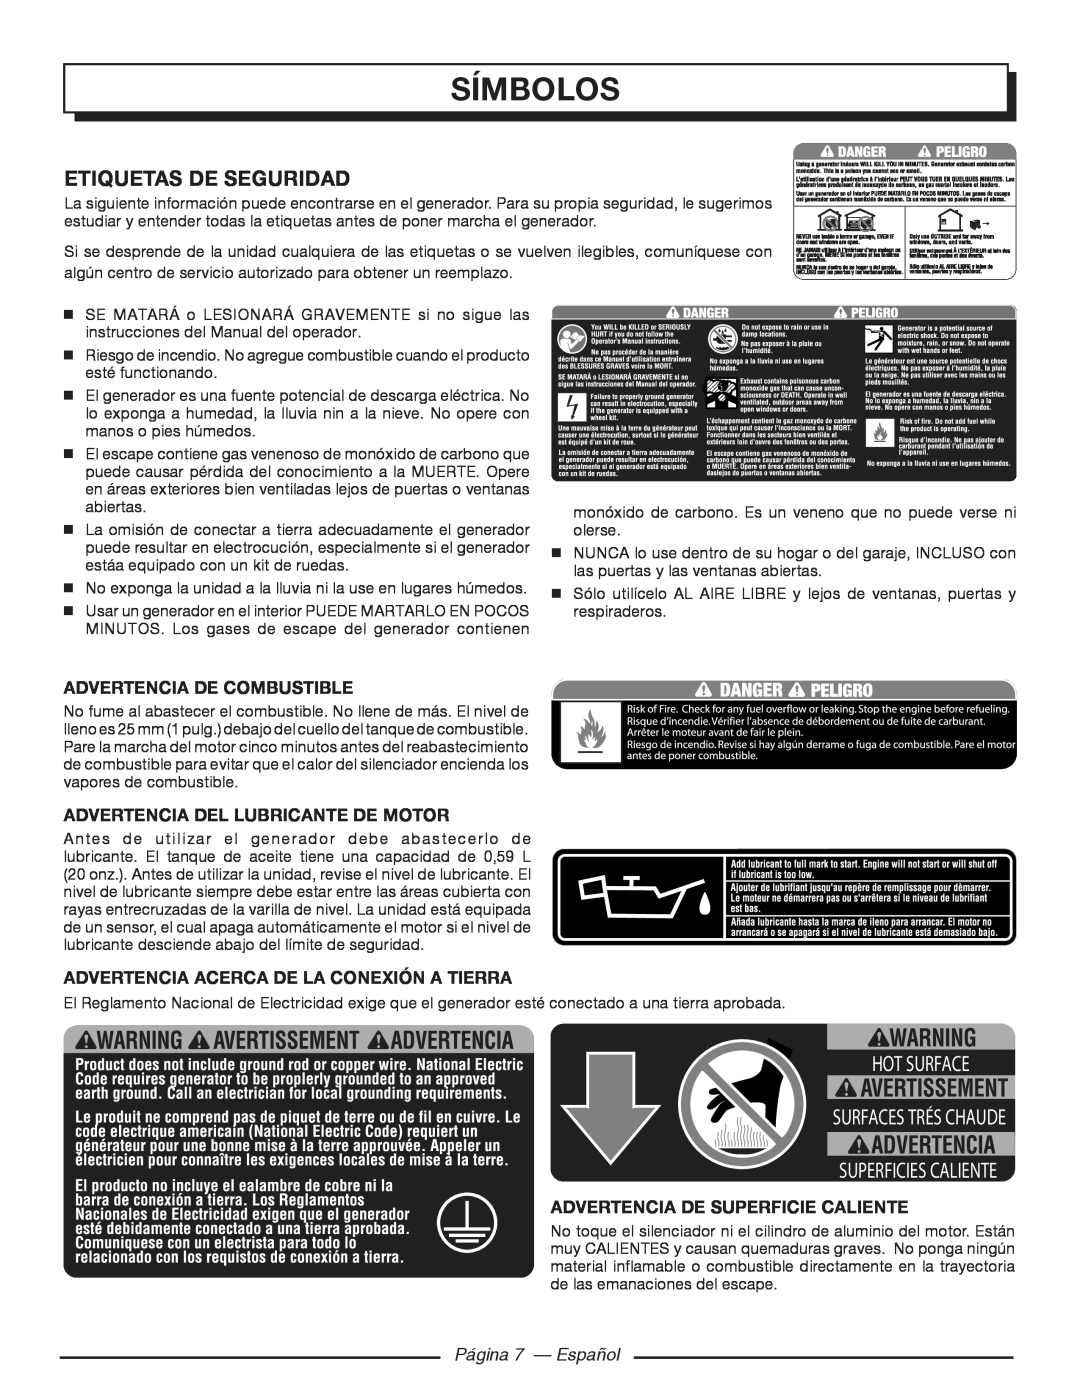 Homelite HGCA3000 símbolos, Etiquetas De Seguridad, Advertencia de combustible, Advertencia del lubricante de motor 